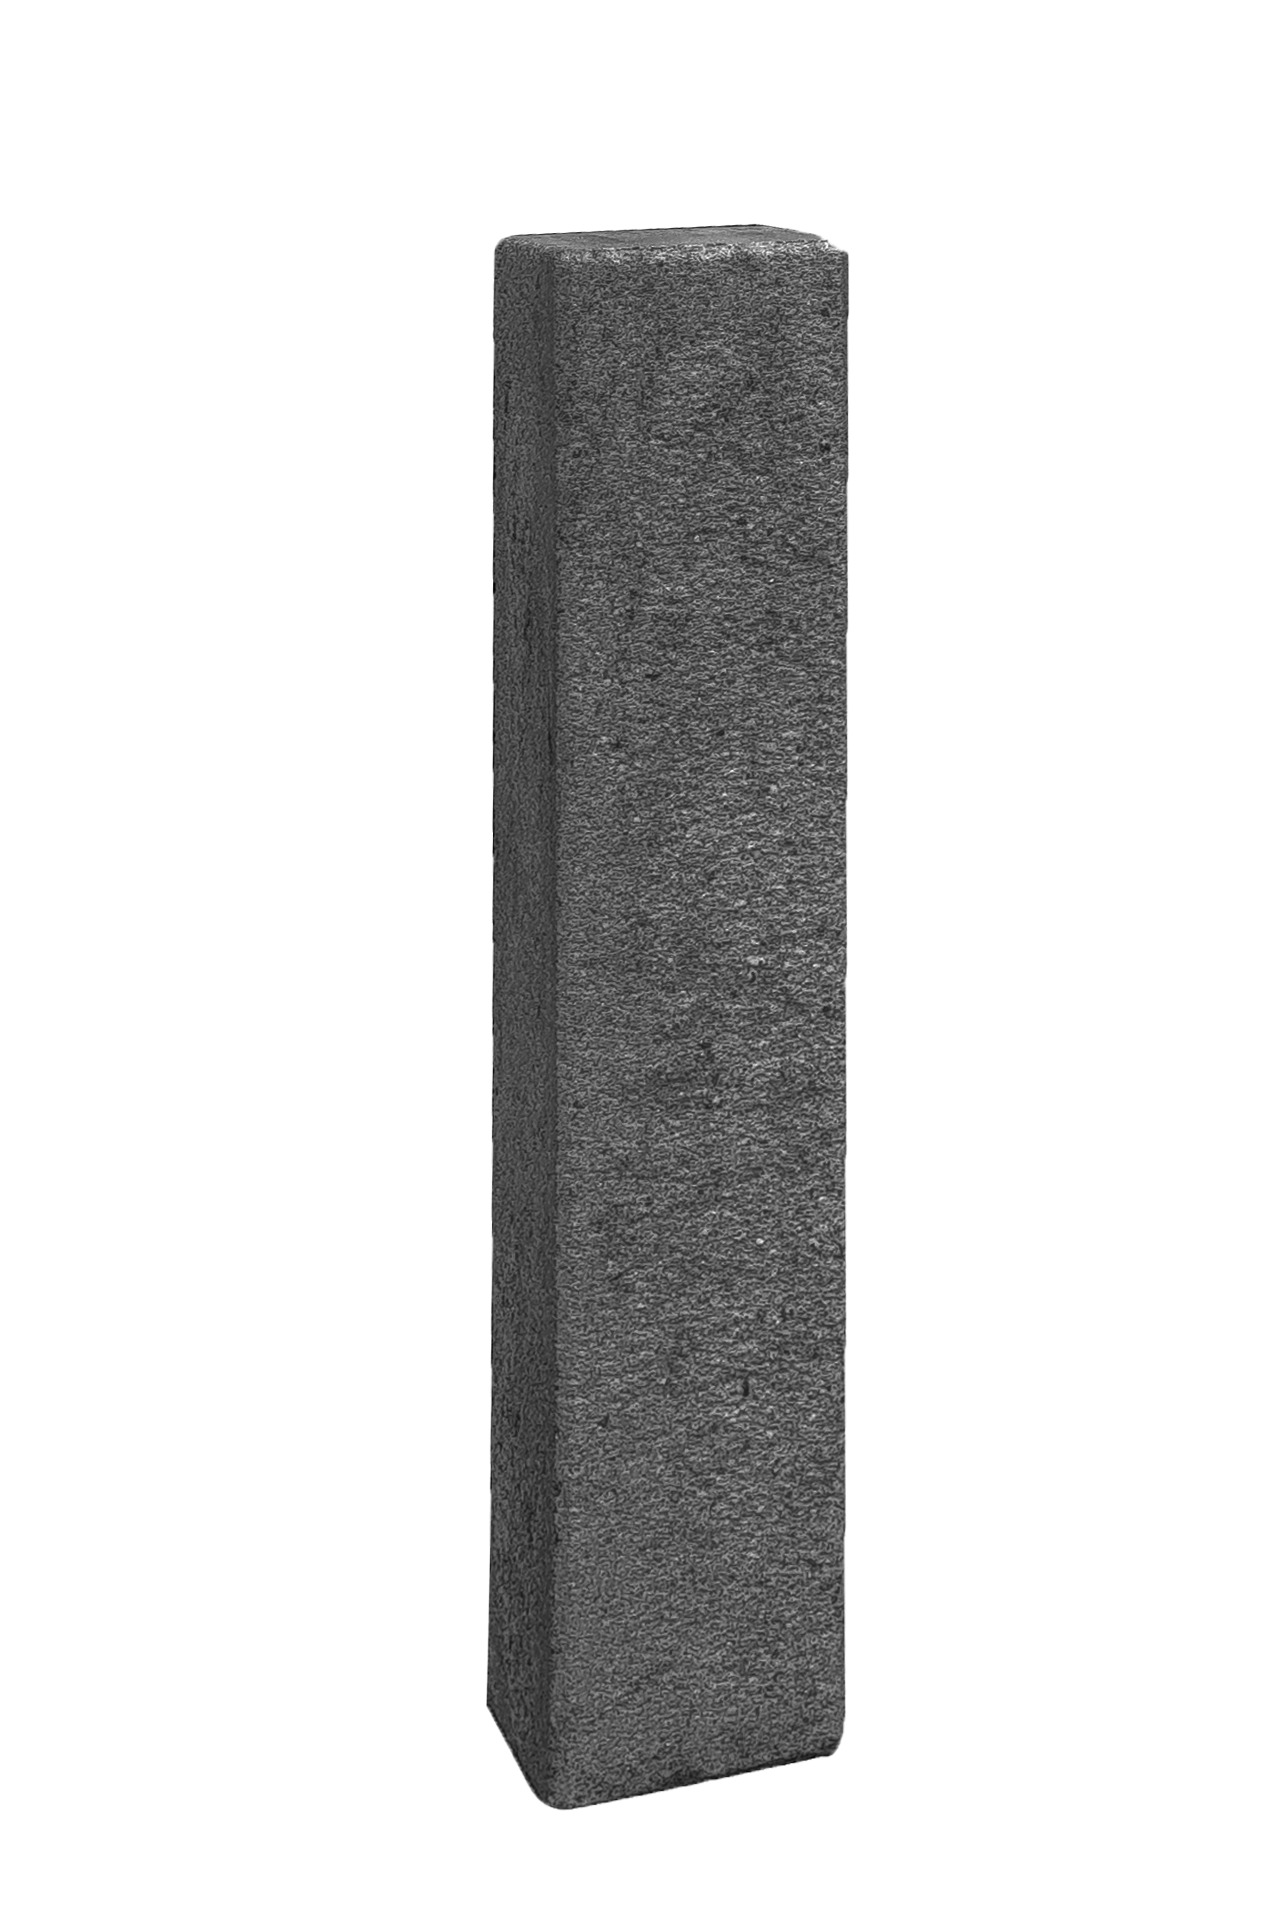 Diephaus Mauerstein Nomos Kombi 80×12,5×12,5cm